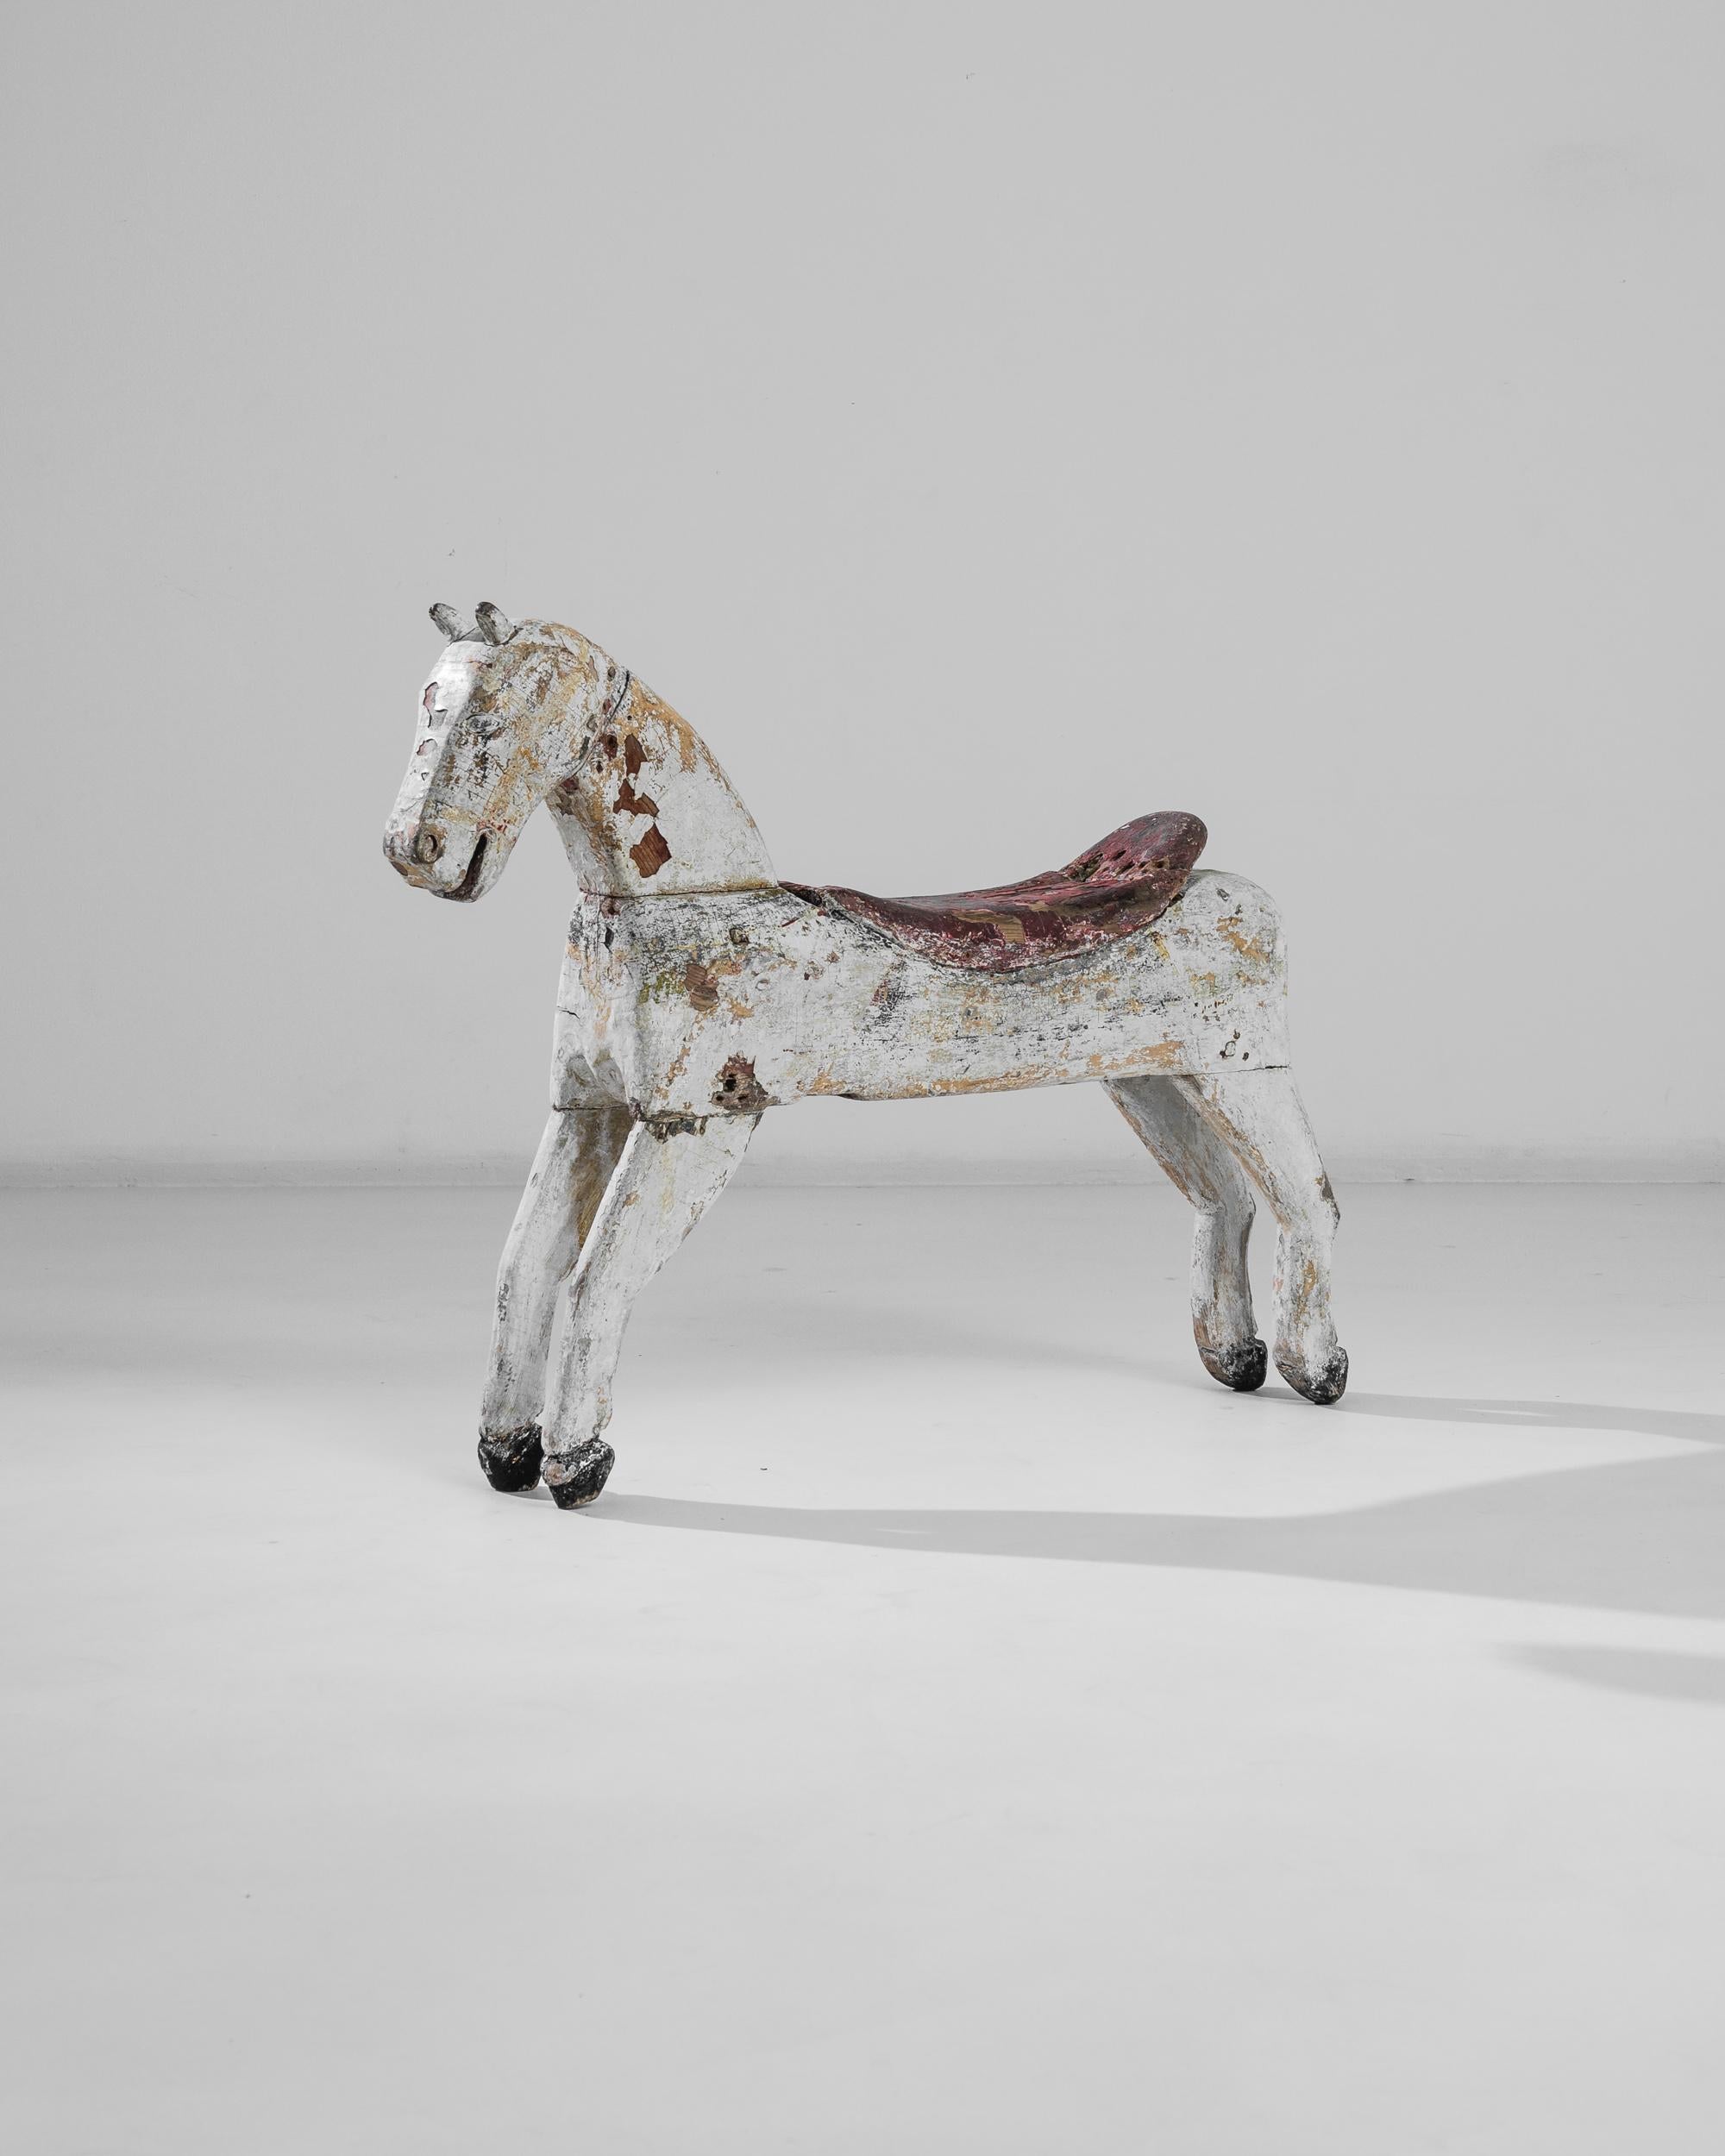 Ce cheval antique en bois a été fabriqué en France, vers 1900. Magnifiquement vieilli, ce poulain svelte affiche un sourire joyeux et une patine gris perle accrocheuse. En équilibre sur la pointe des sabots comme une ballerine et doté de charmantes